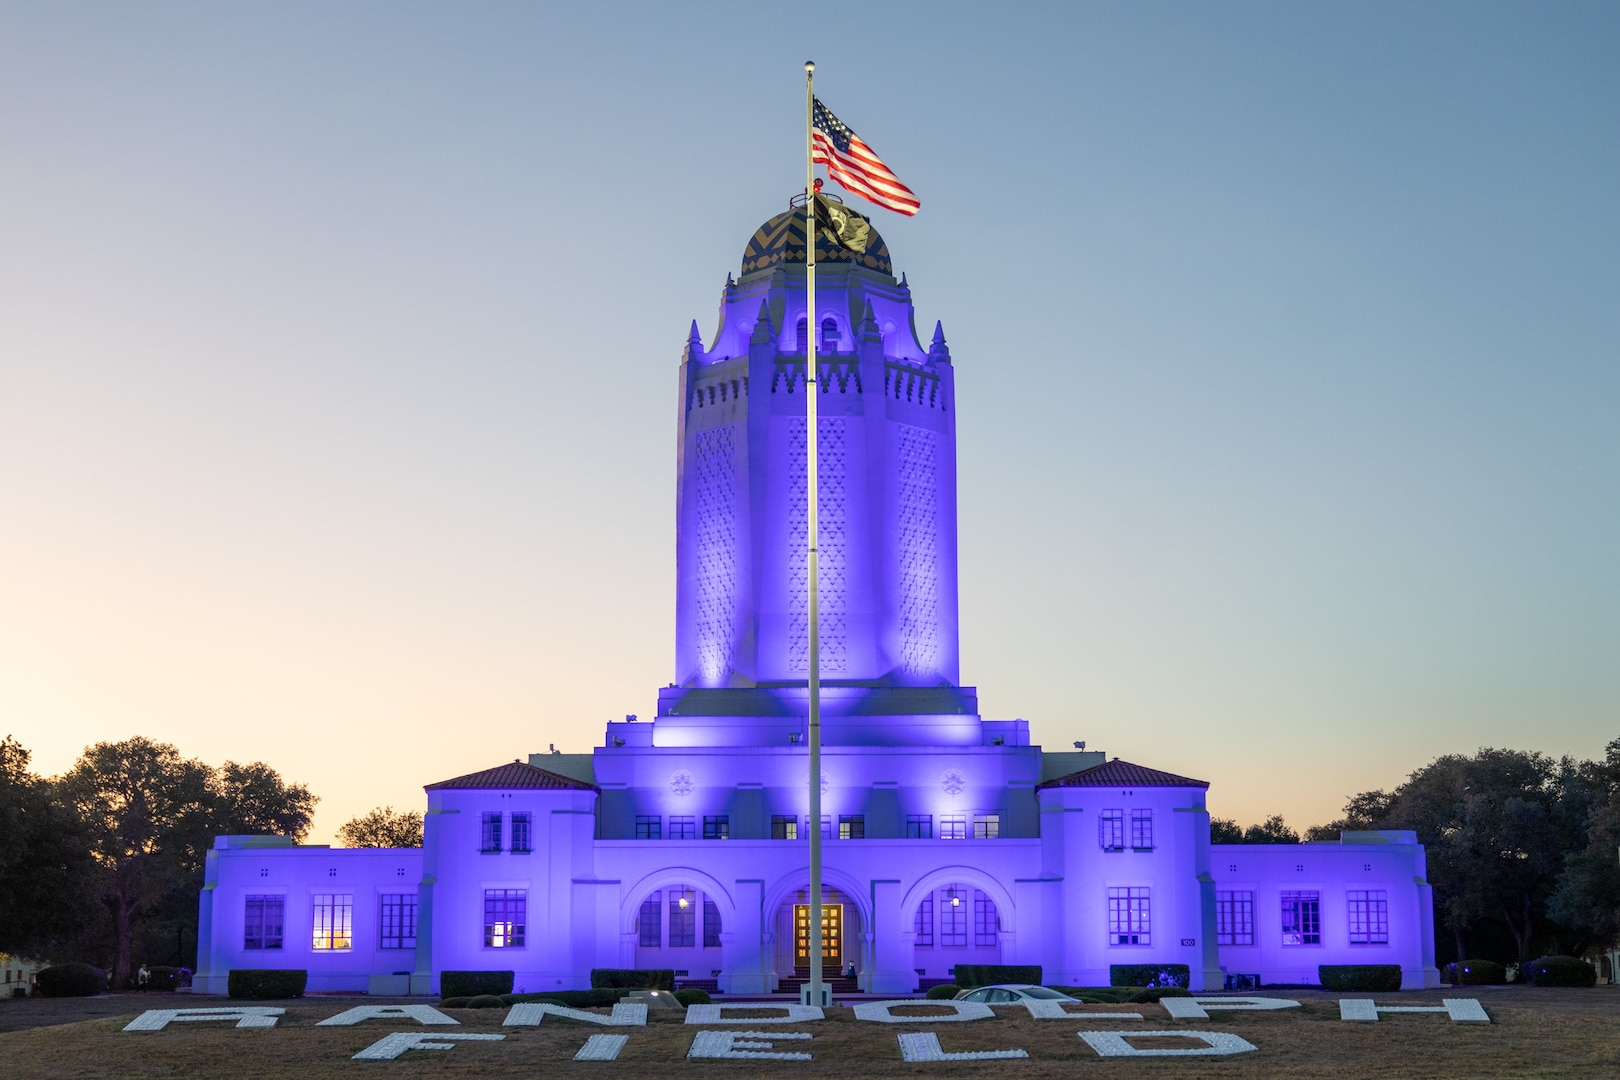 Tower is lit in purple